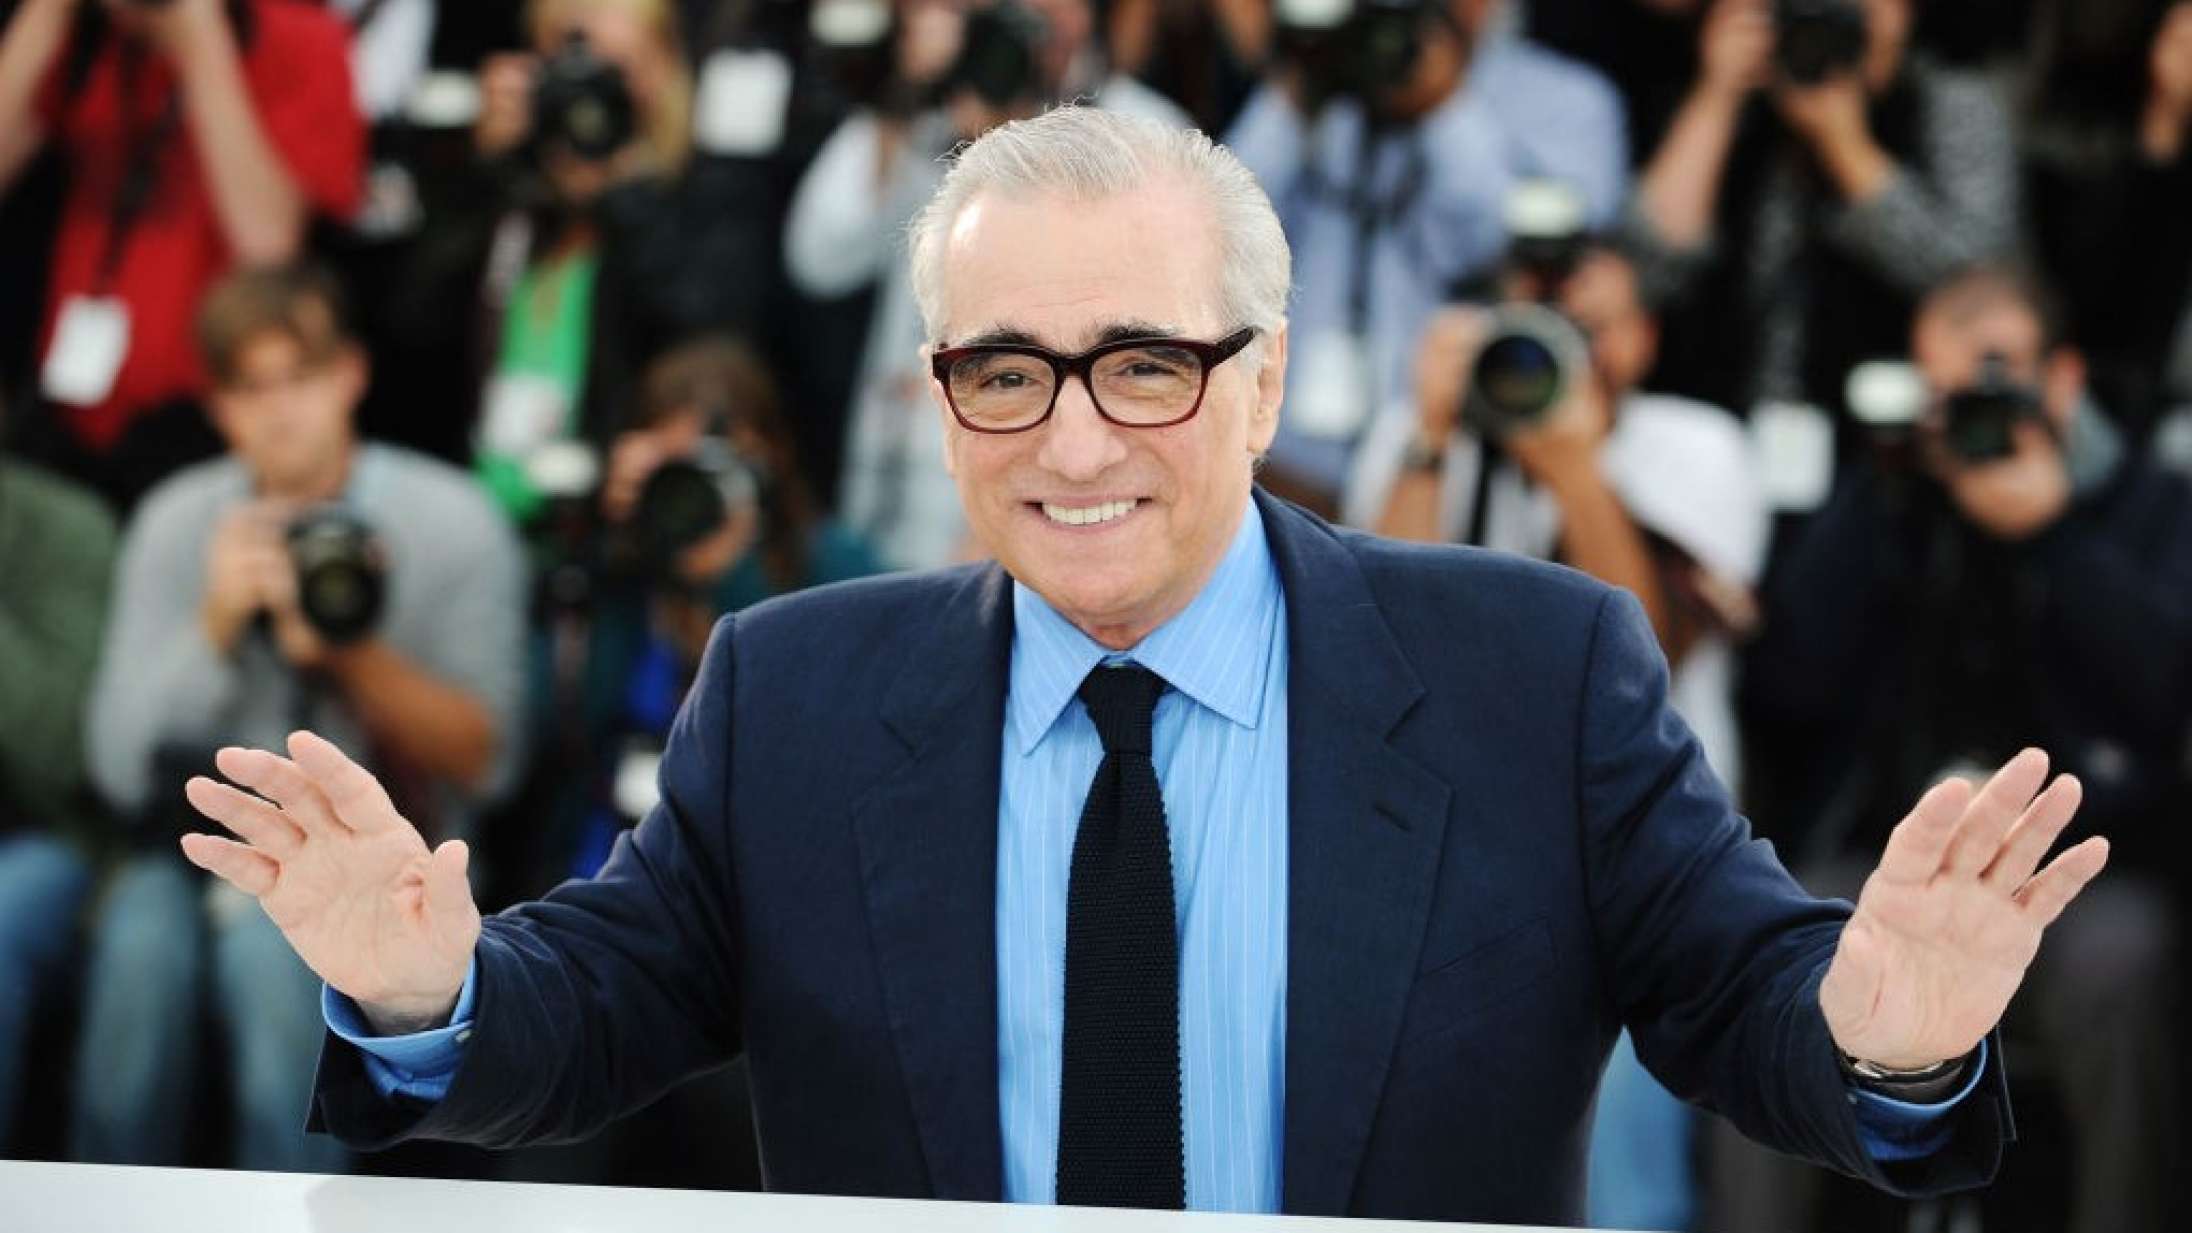 Martin Scorsese vil lave film om Jesus efter møde med paven